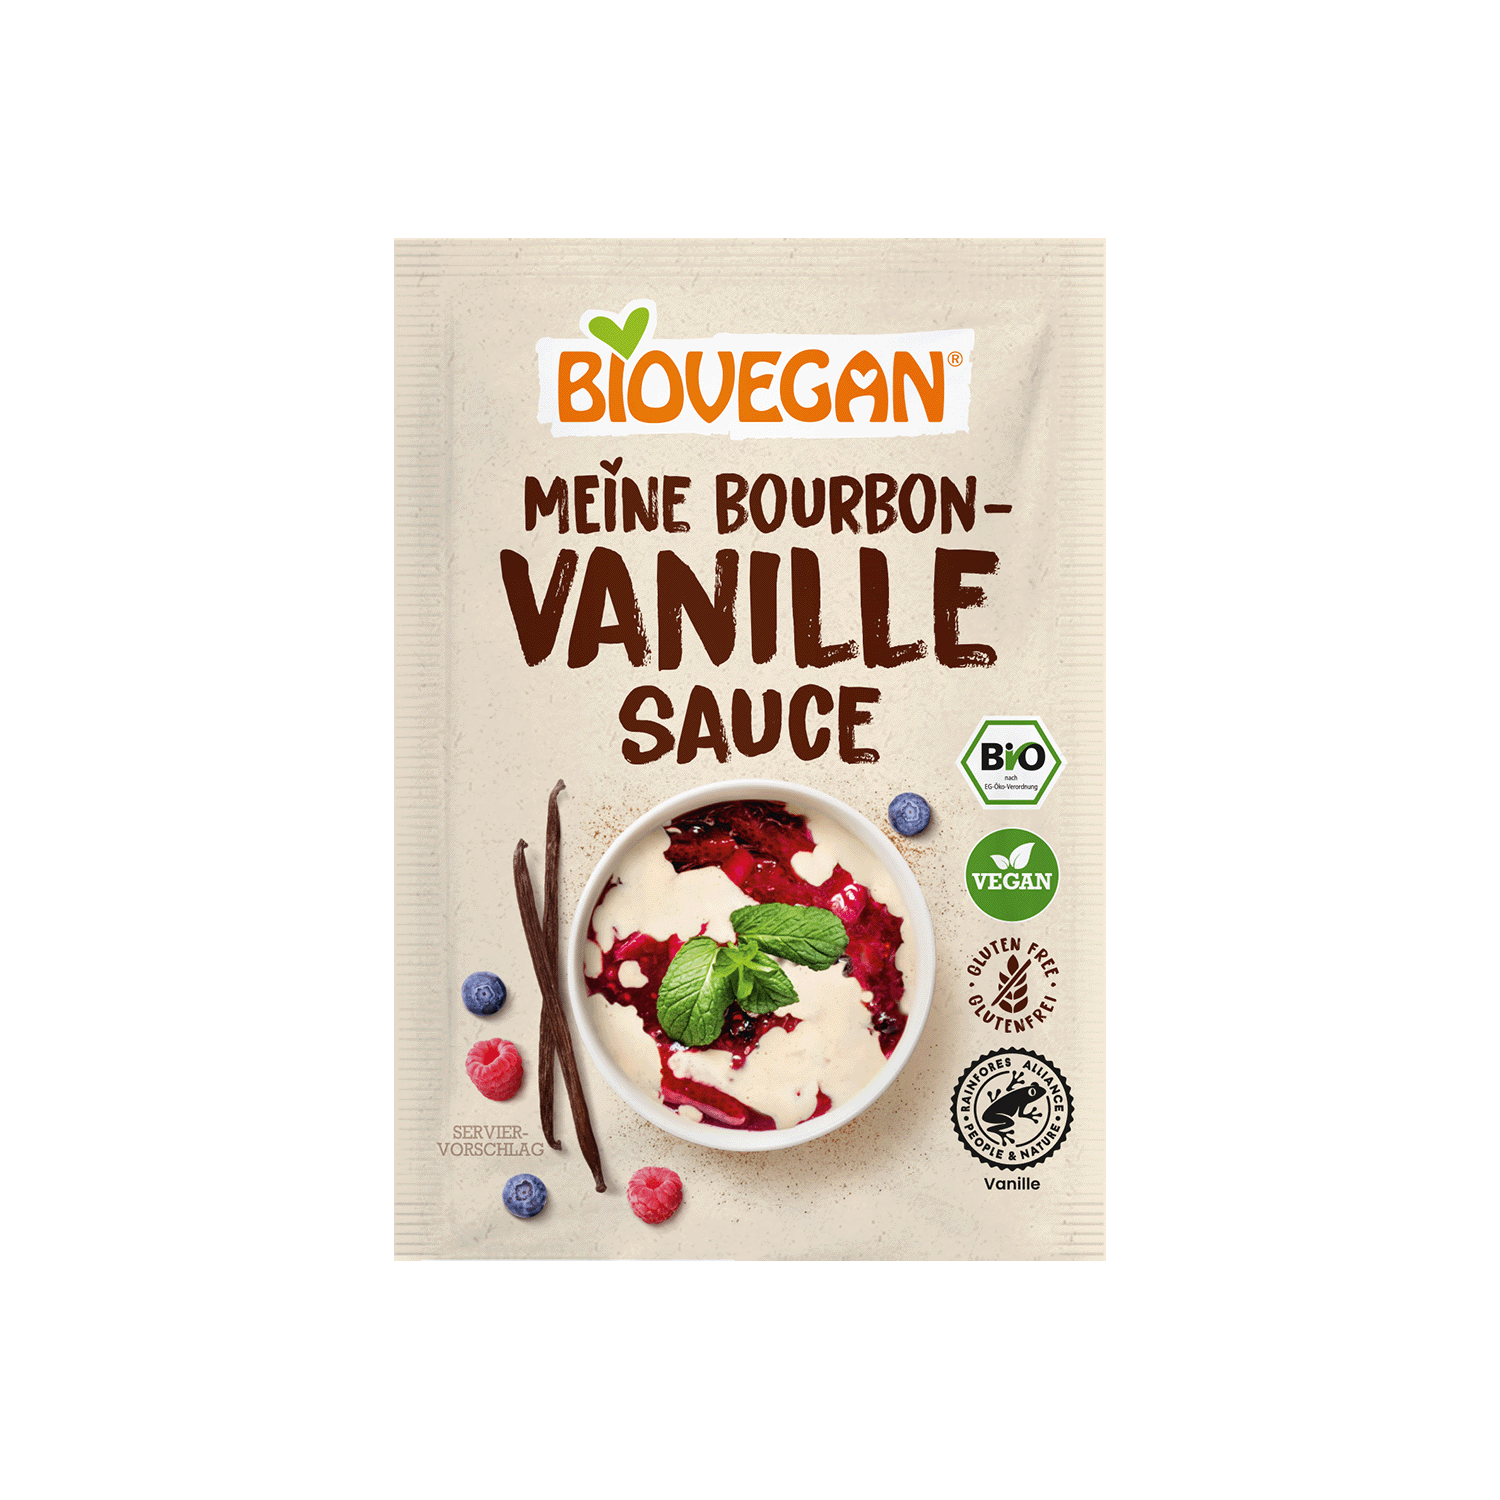 Vanille Sauce With Bourbon-Vanilla, Organic, 32g